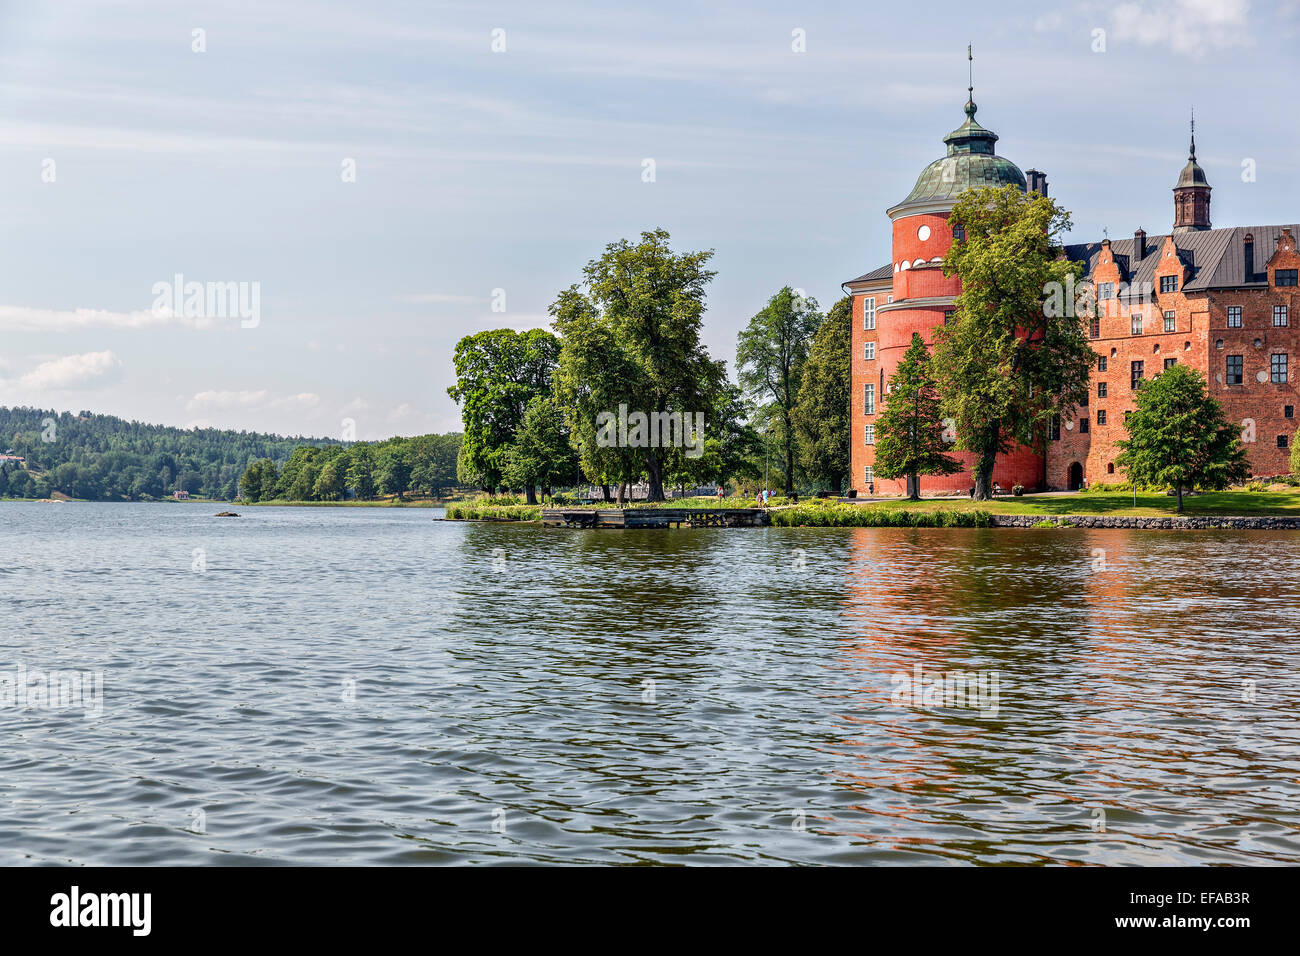 El Castillo de Gripsholm se refleja en el lago Mälaren, Mariefred, Strängnäs, Södermanland län, cerca de Estocolmo, Suecia Foto de stock